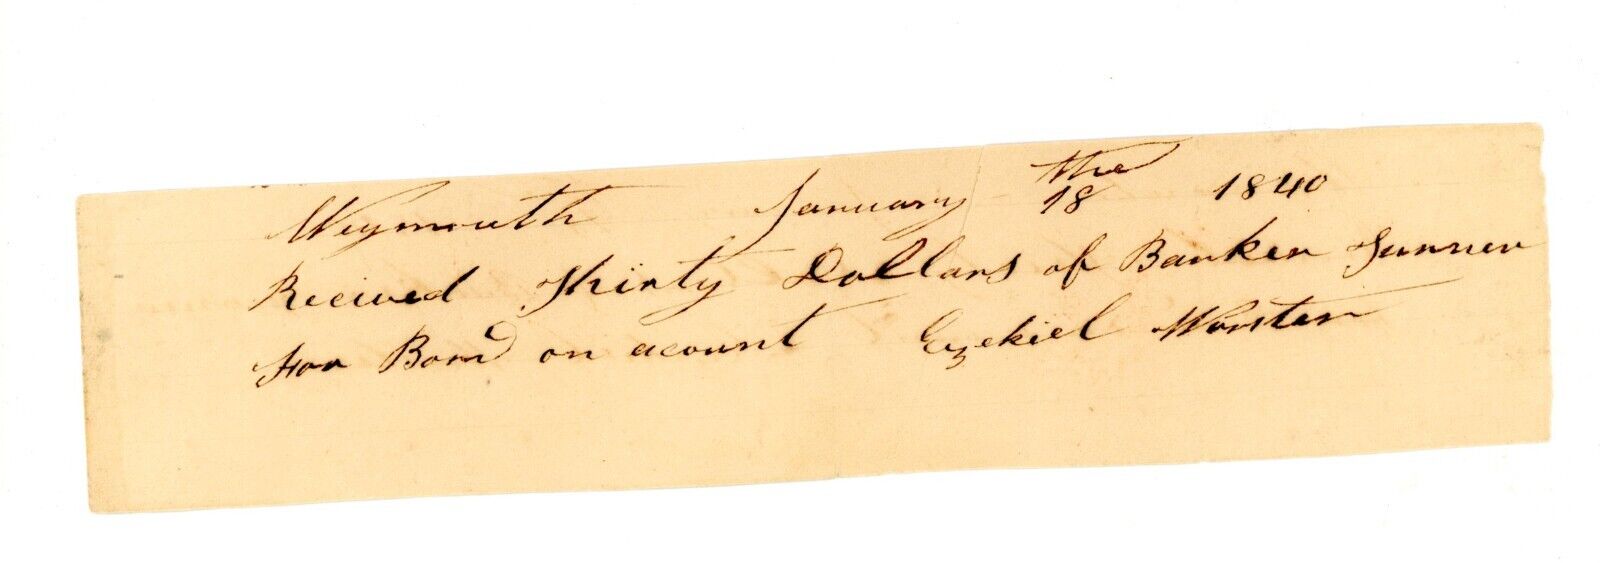 1840 Hand signed Weymouth Massachusetts Ezekiel Warter Bank receipt